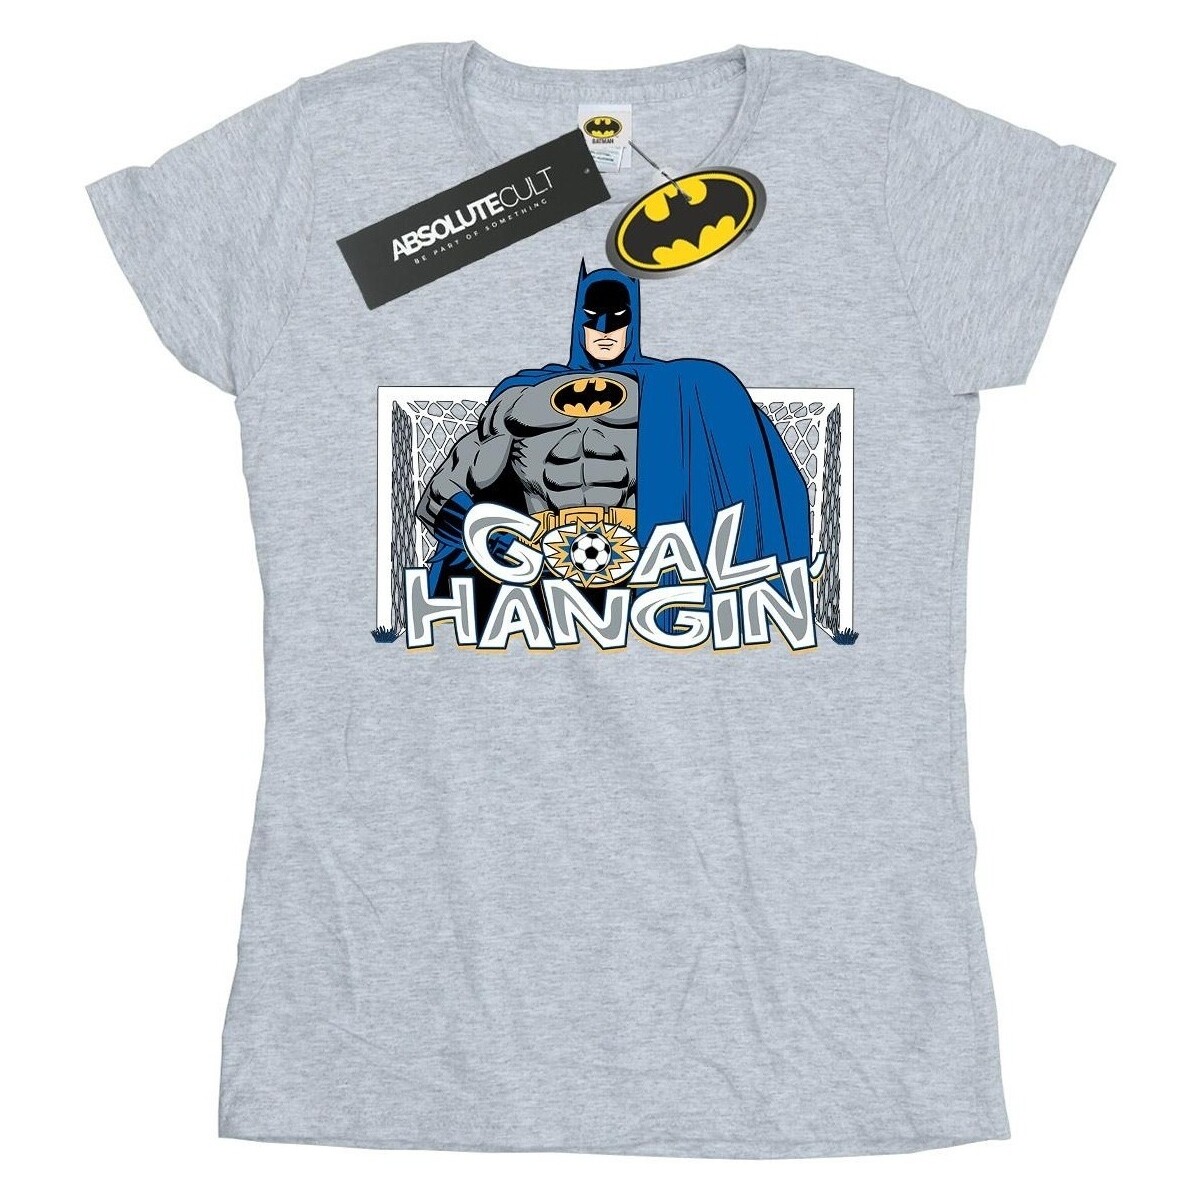 textil Mujer Camisetas manga larga Dc Comics Batman Football Goal Hangin' Gris